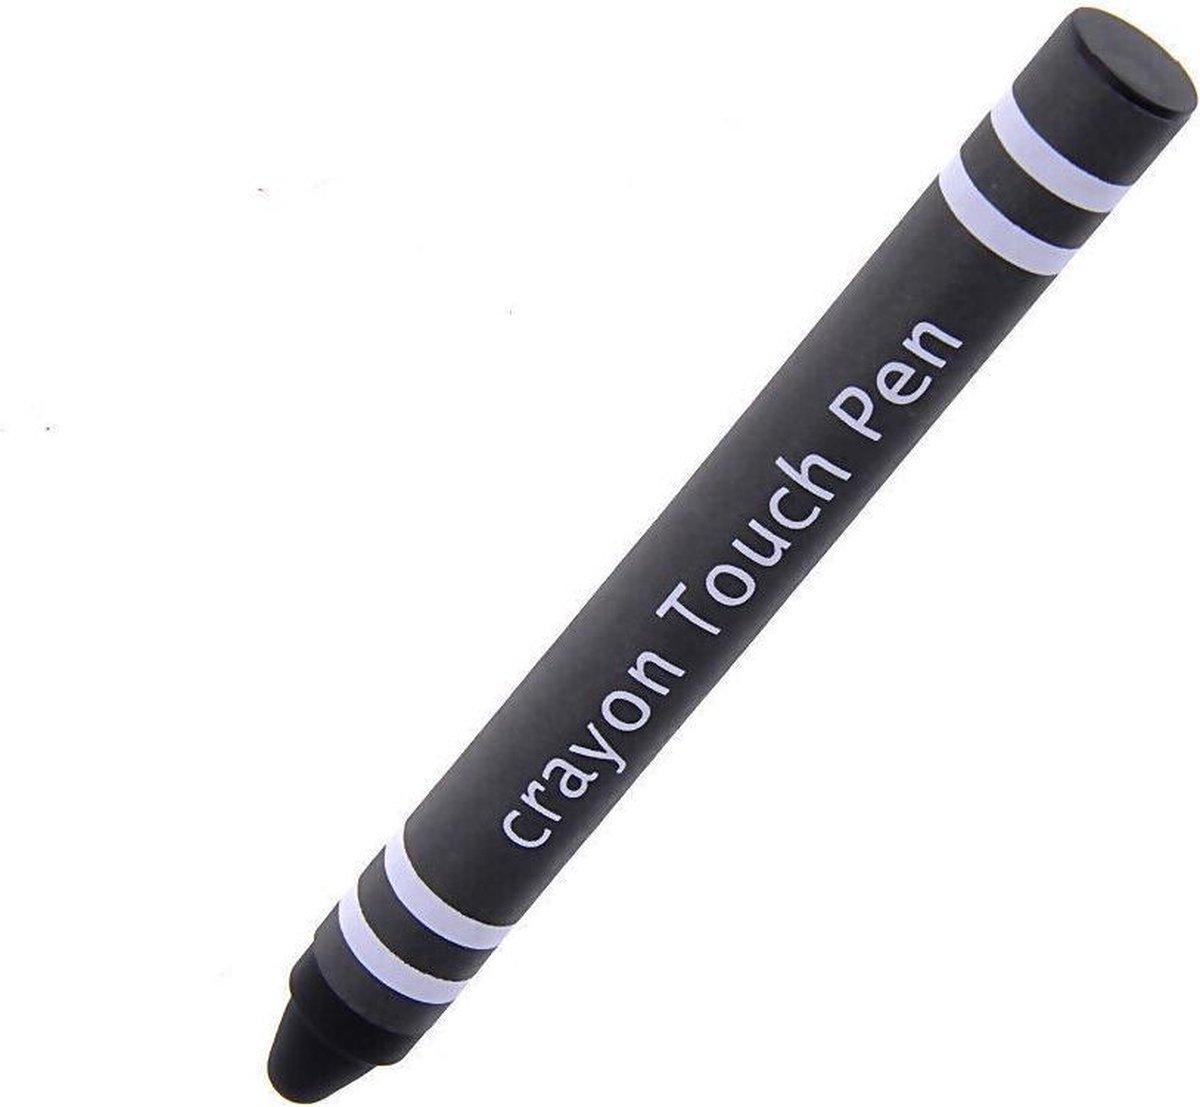 Kids Stylus Pen - Stylus pen voor kinderen - Soft Touch - Smartphone & Tablet pen - Zwart